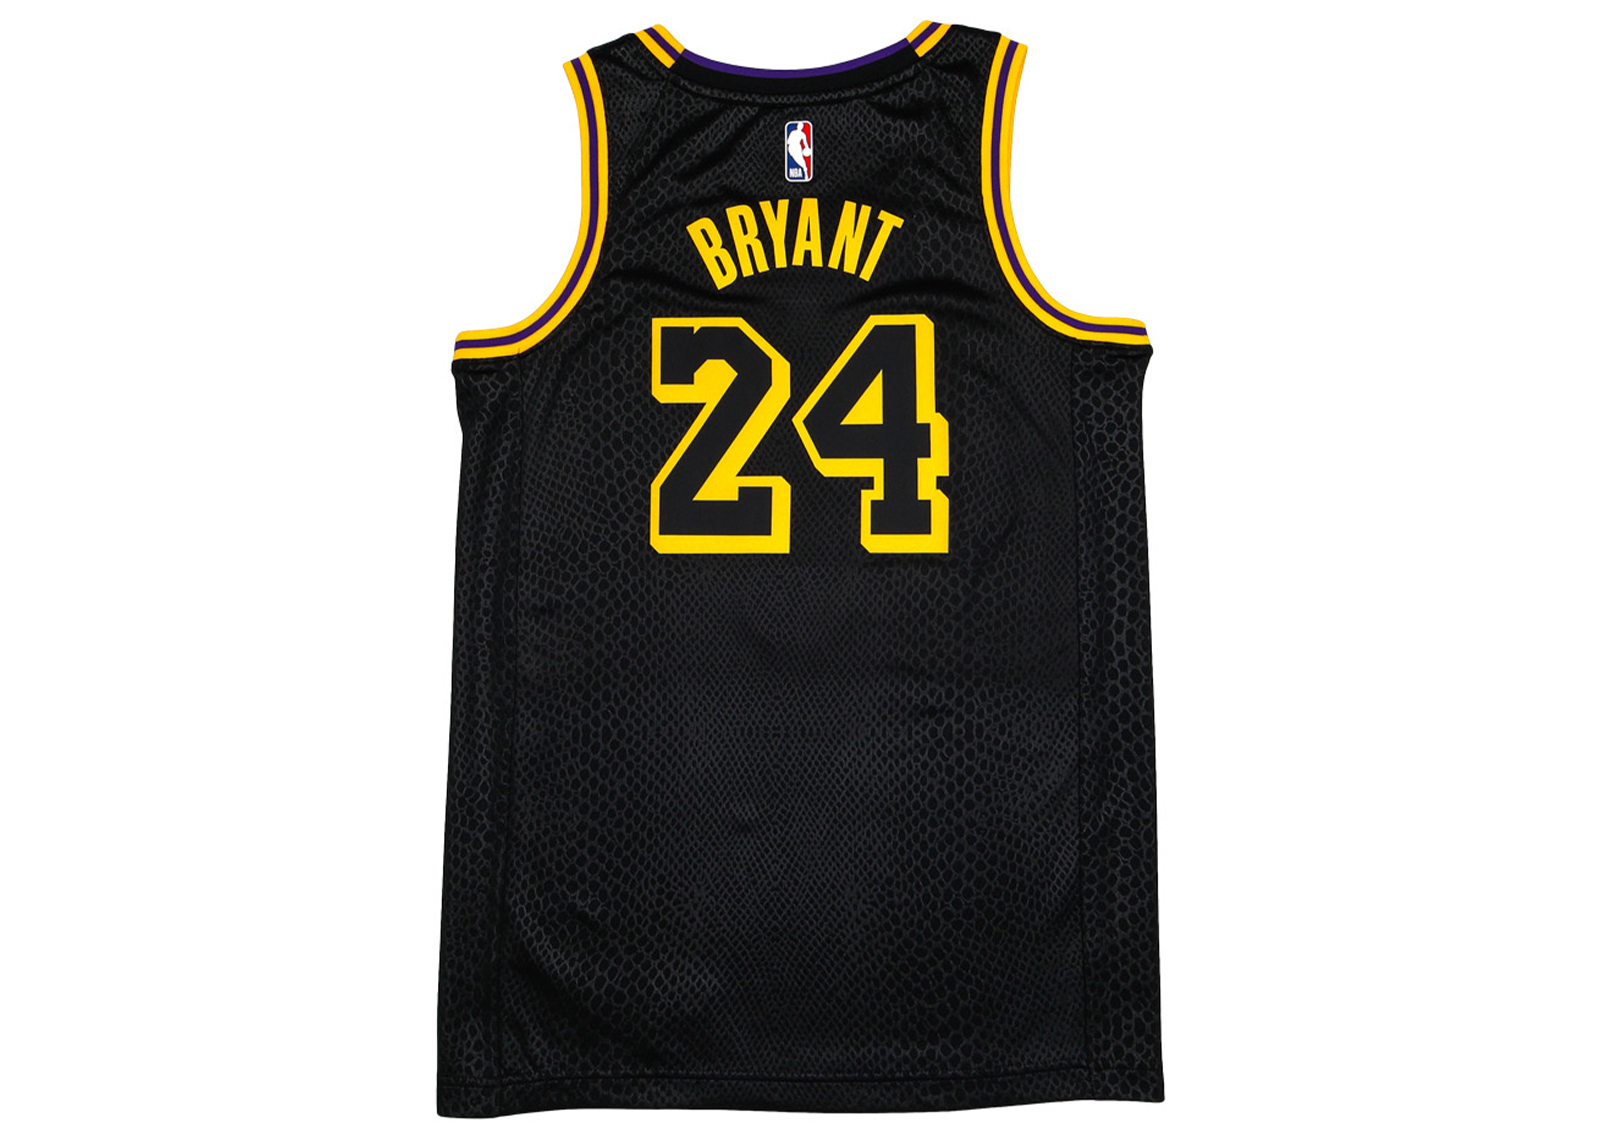 Kobe Bryant #24 Los Angeles Lakers Basketball Trikot Jersey Schwarze Mamba 